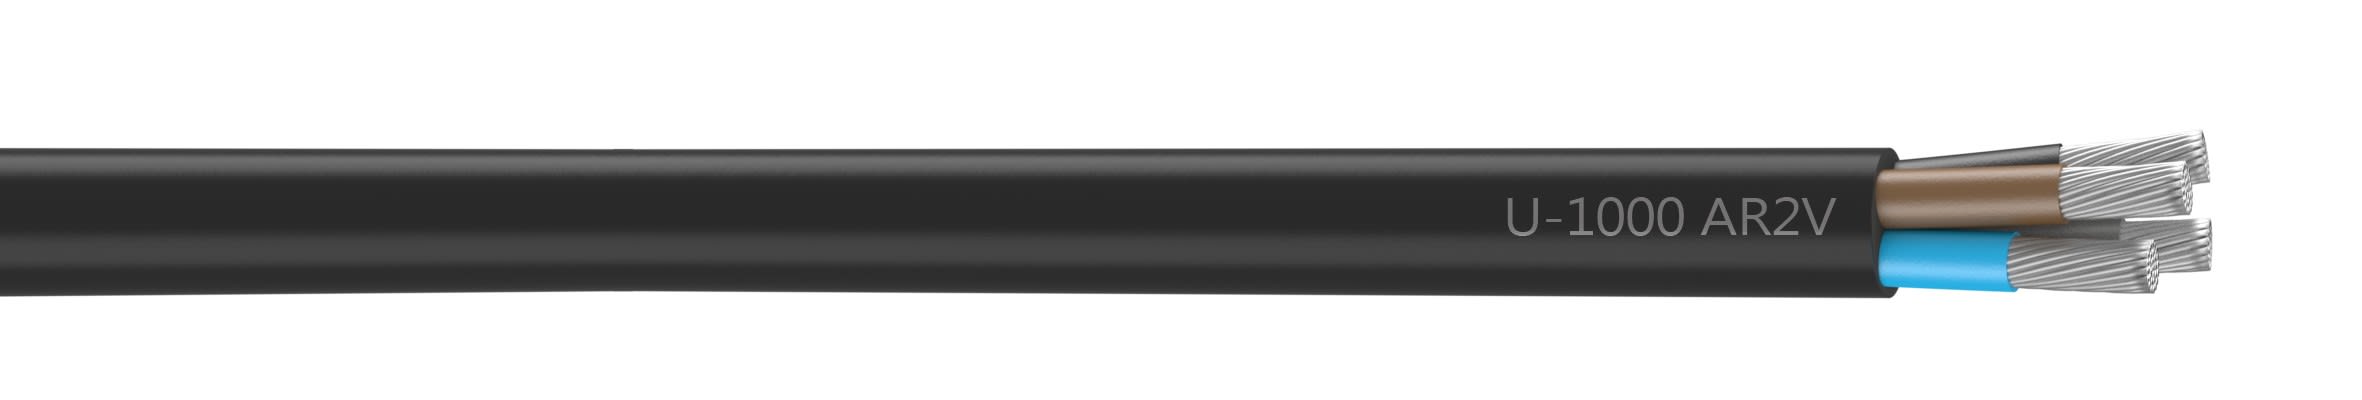 Nexans - Câble rigide U-1000 AR2V aluminium 4x95 longueur à la coupe